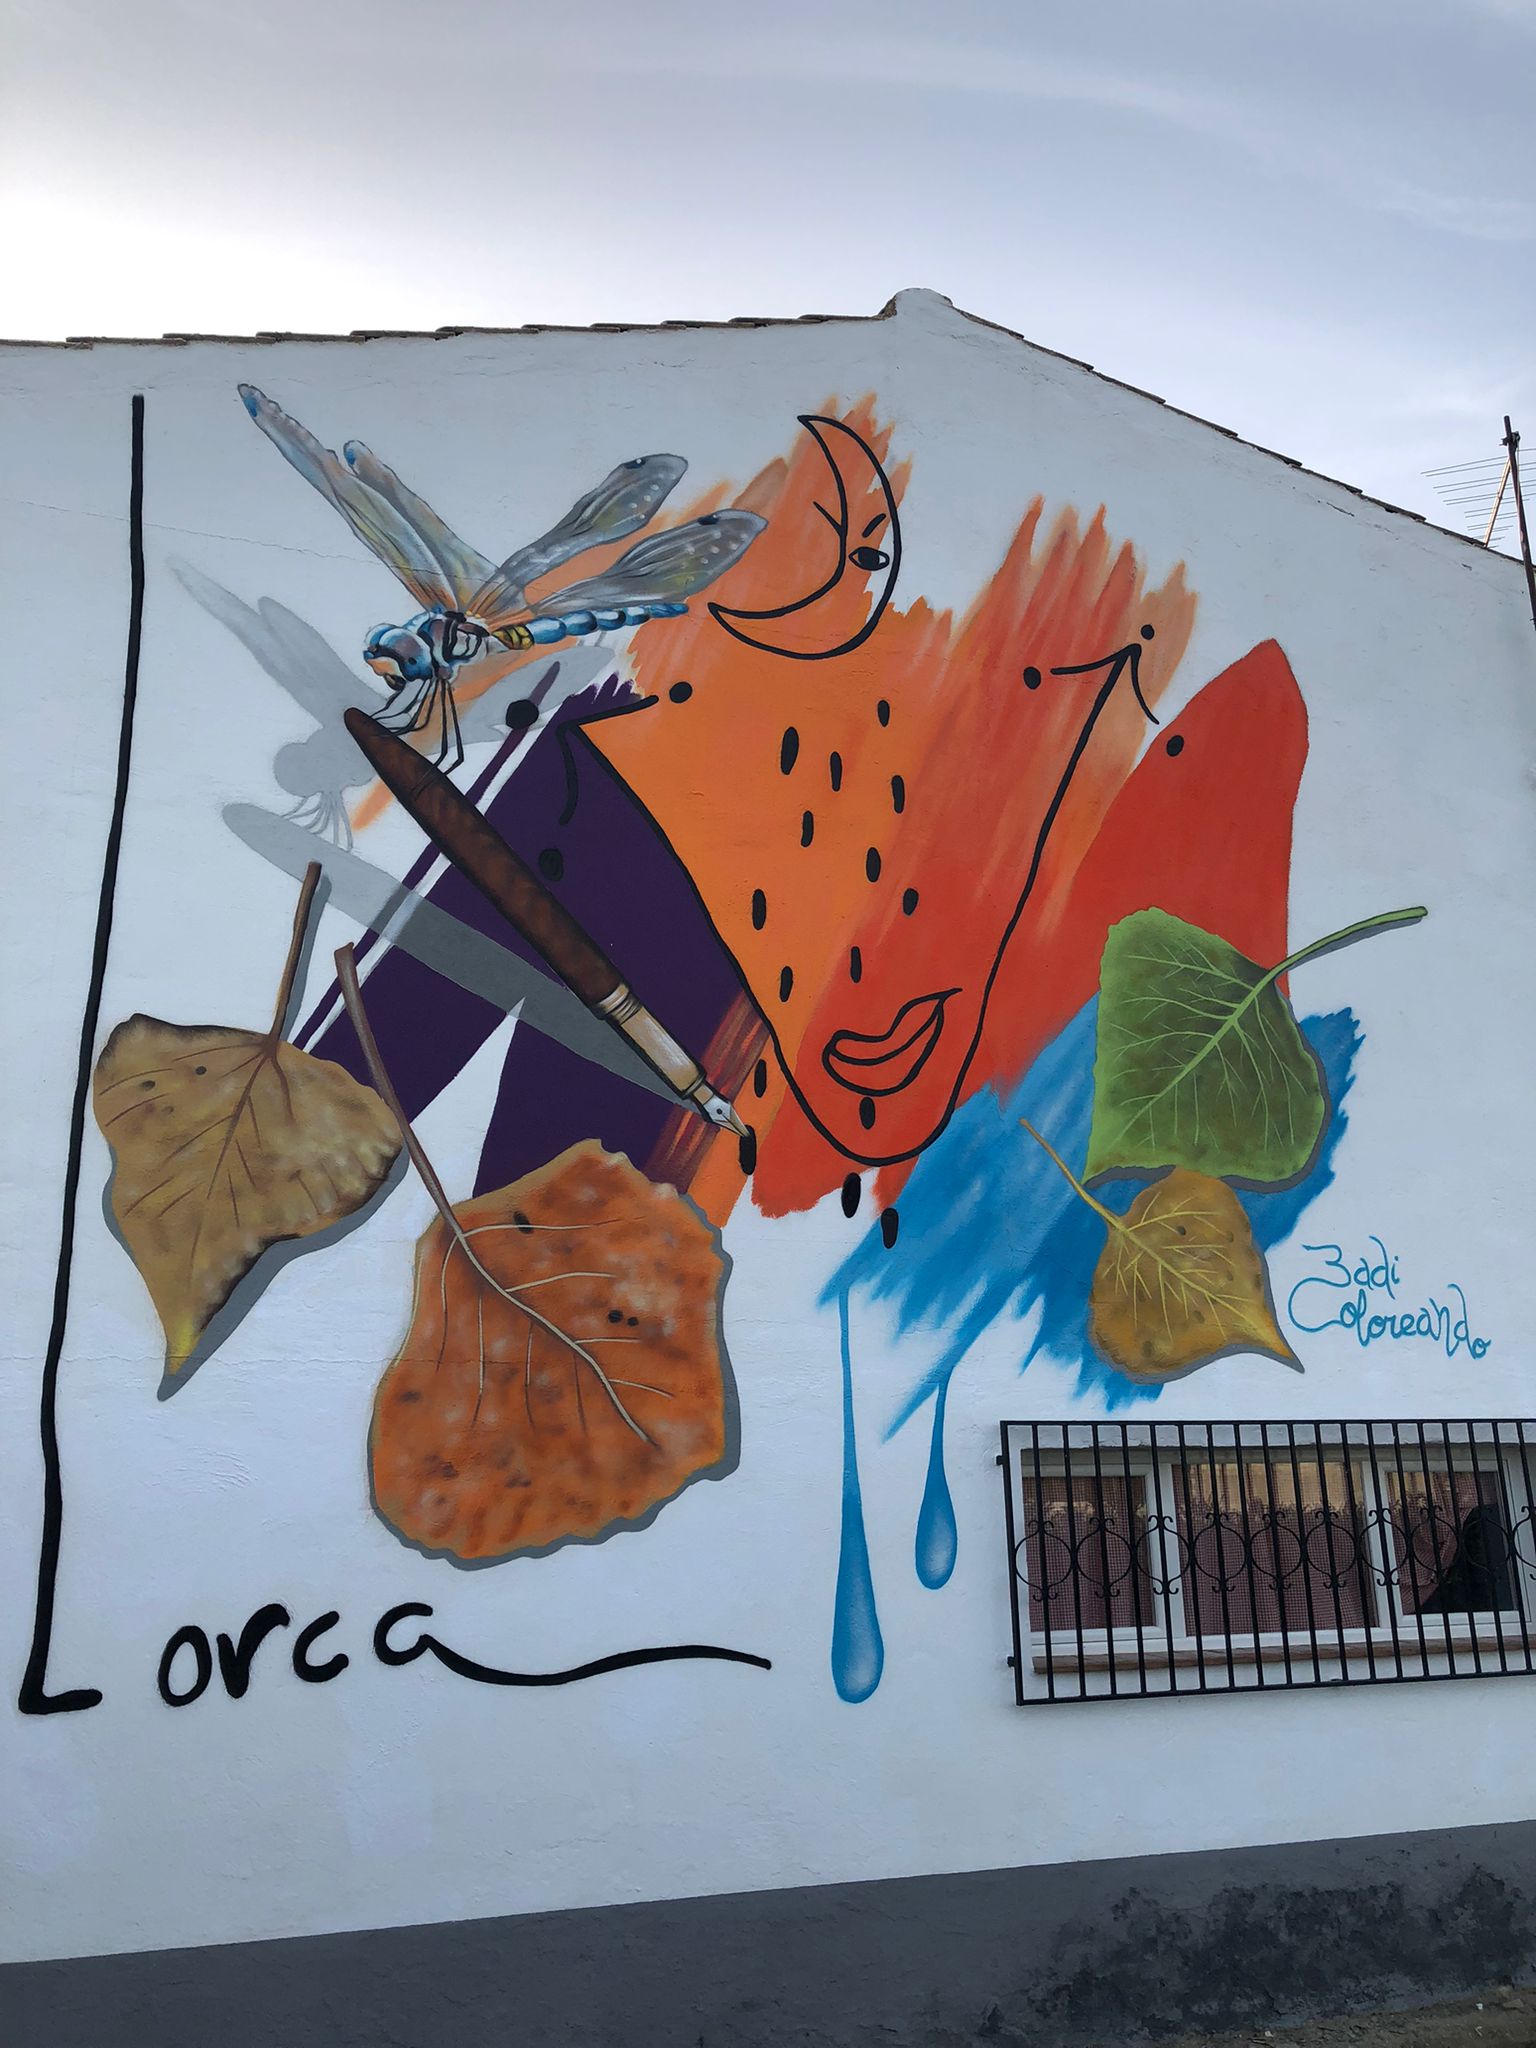 Fuente Vaqueros se convierte en un museo al aire libre con una ruta de ‘murales con duende’ de inspiración lorquiana